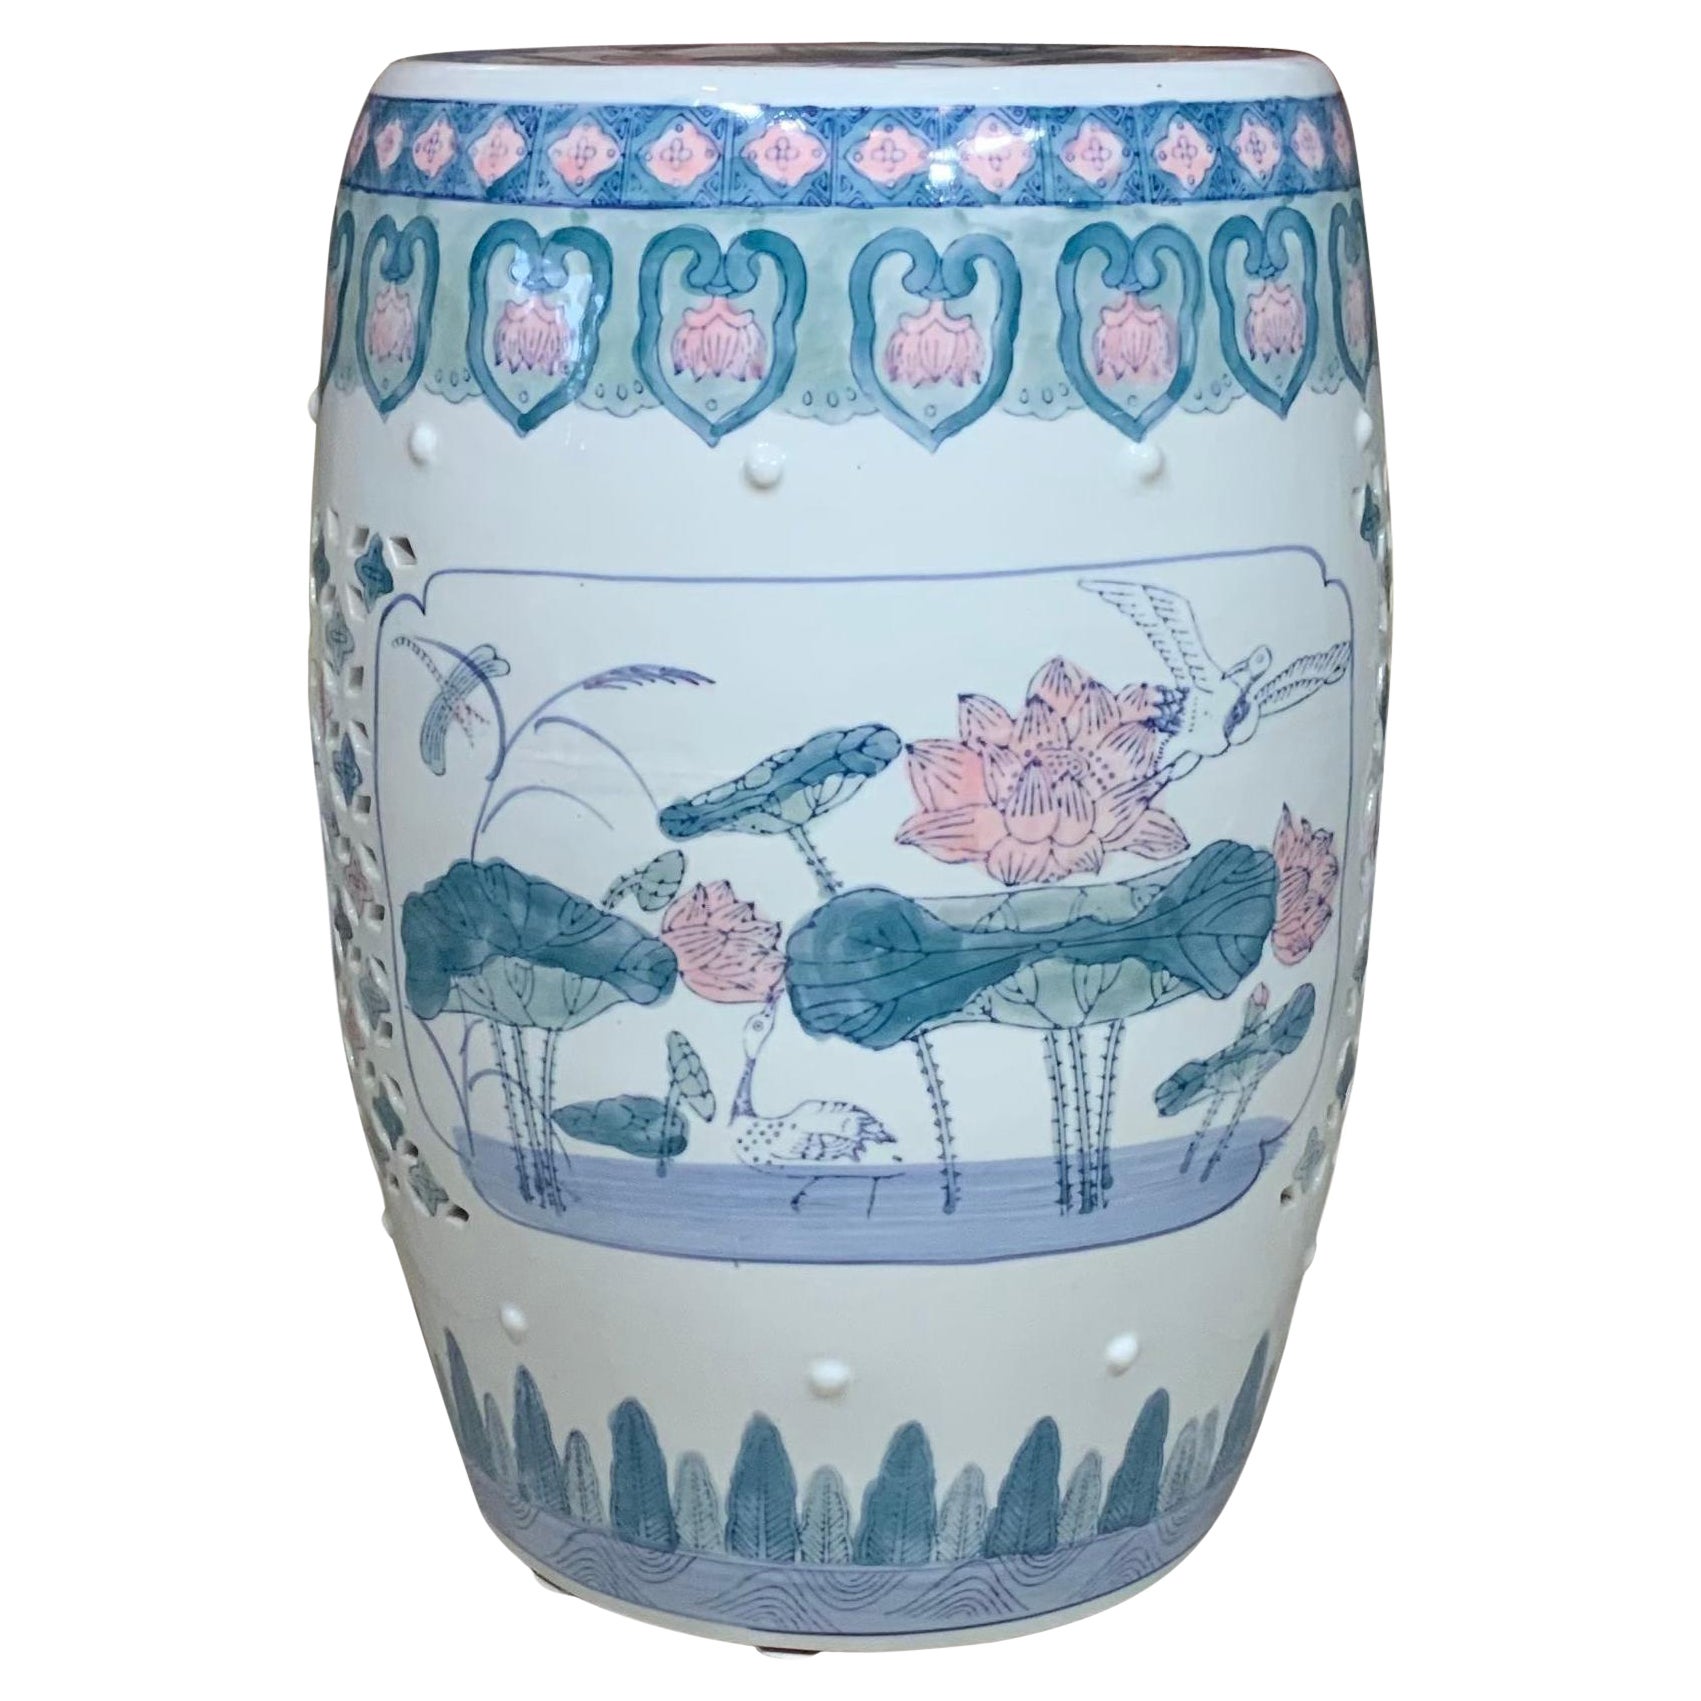 1980 Chinese Ceramic Garden Stool